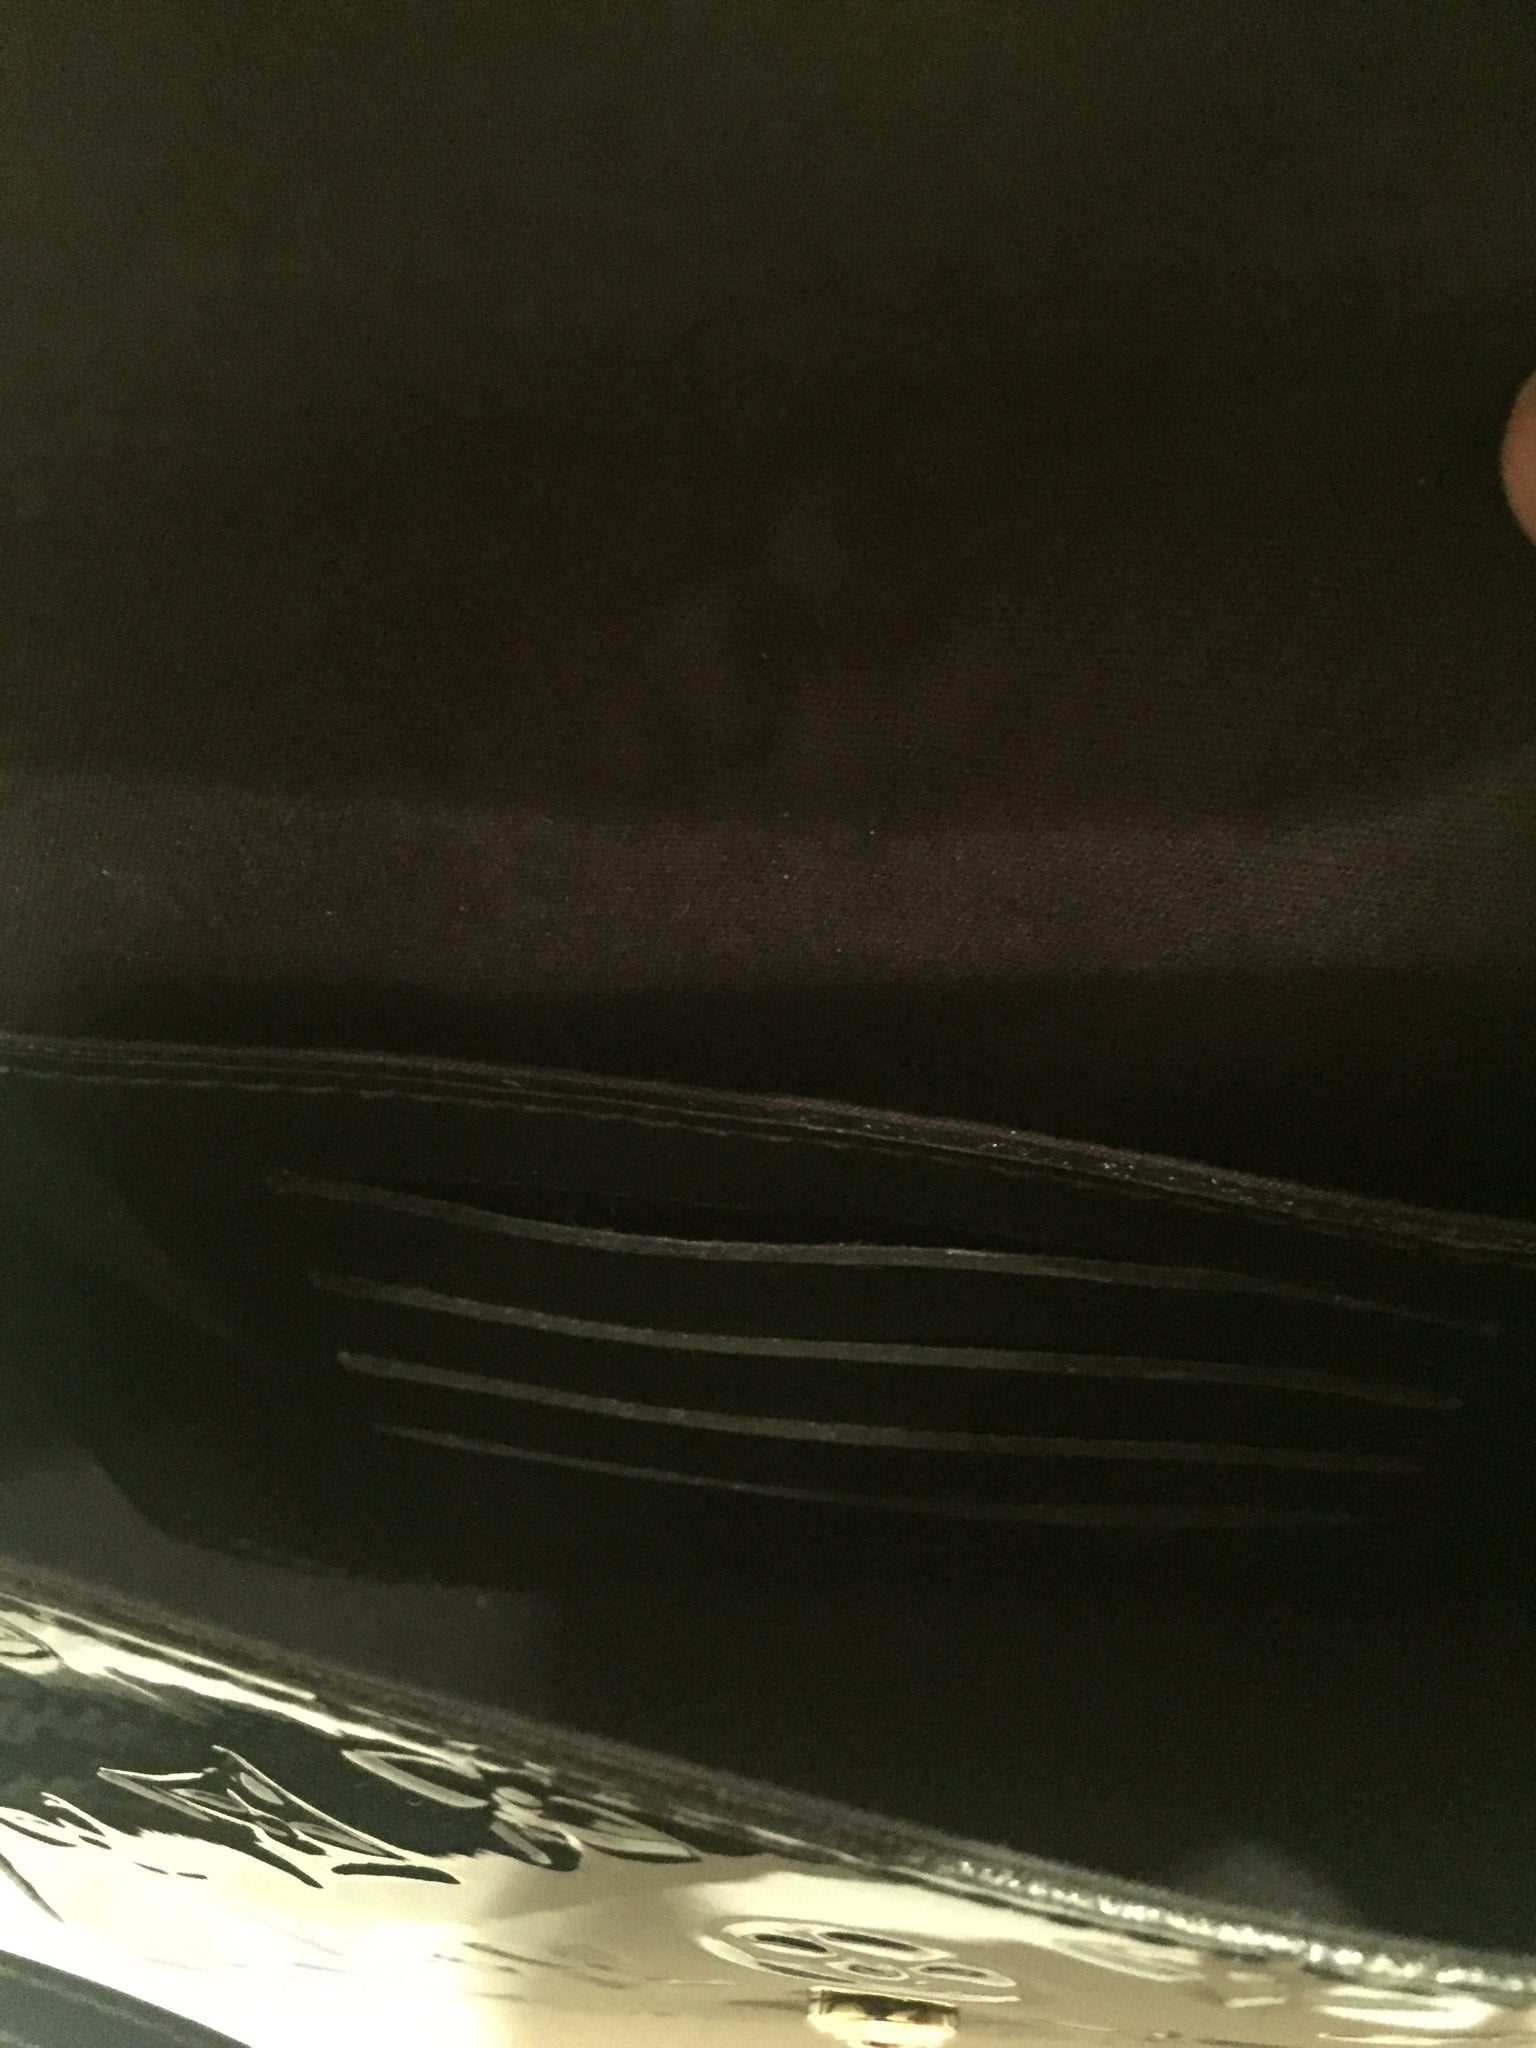 Louis Vuitton Mini Sac Luci Bag